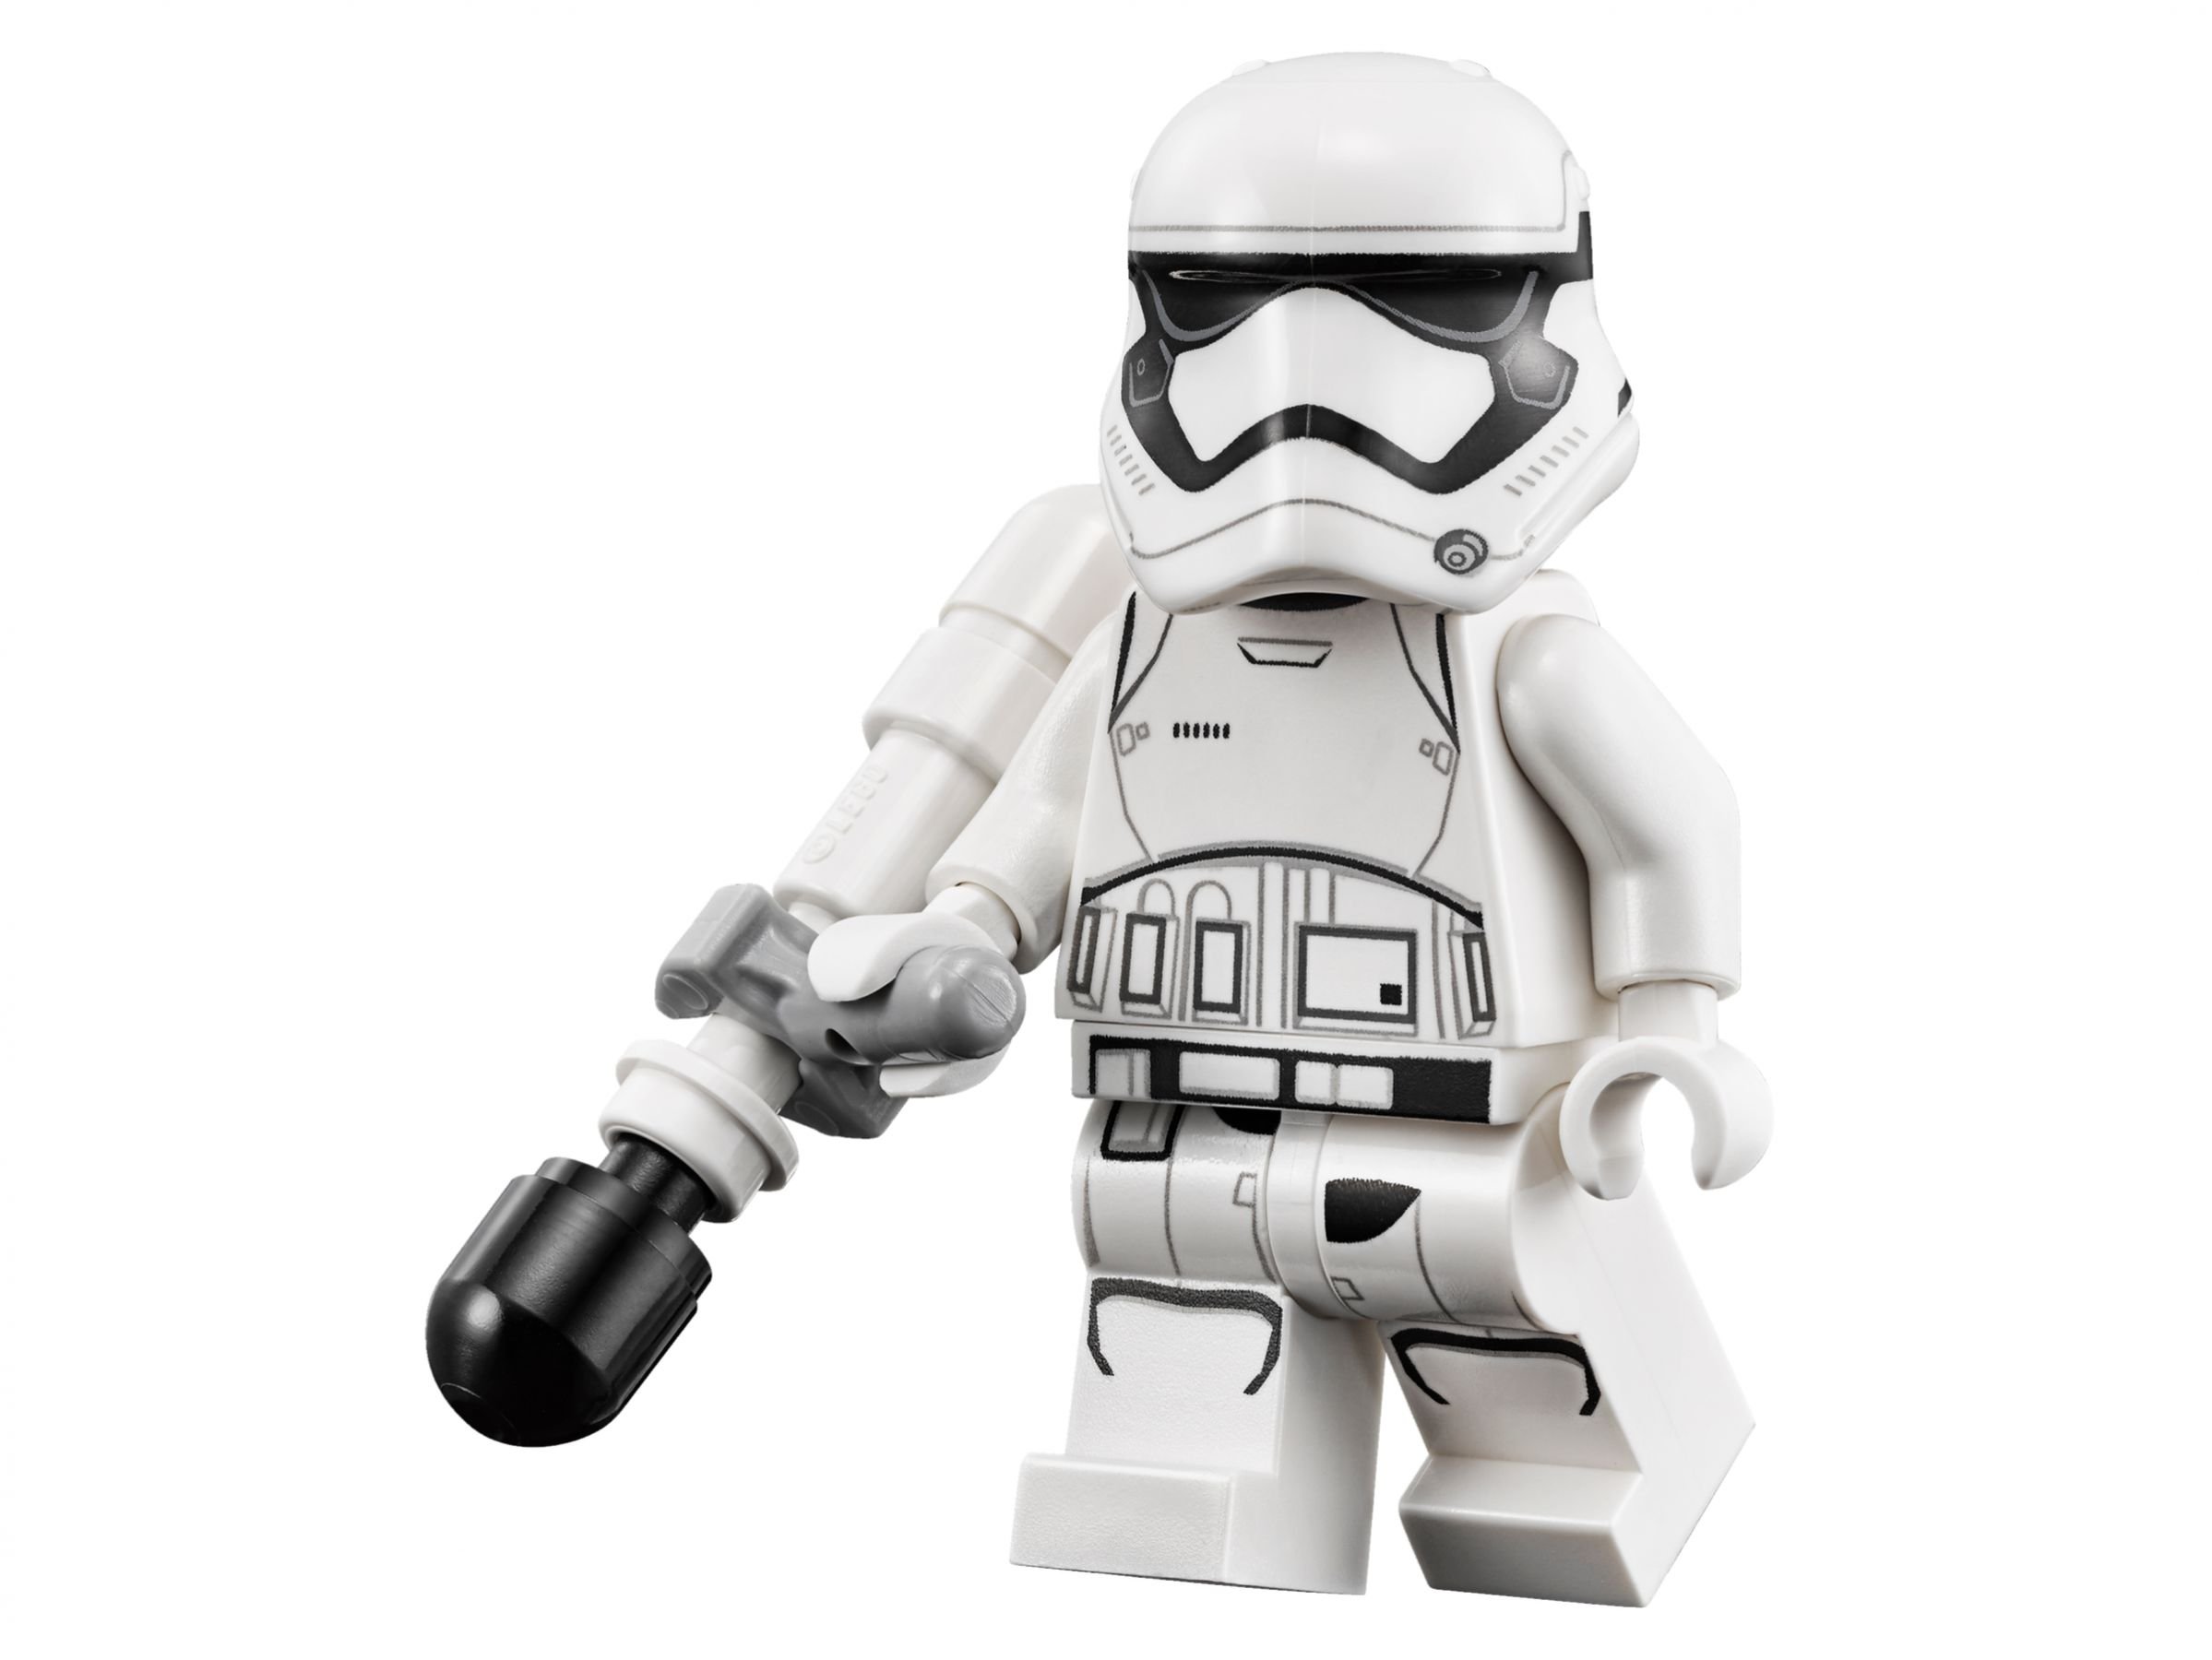 LEGO Star Wars 75139 Schlacht auf Takodana LEGO_75139_alt11.jpg